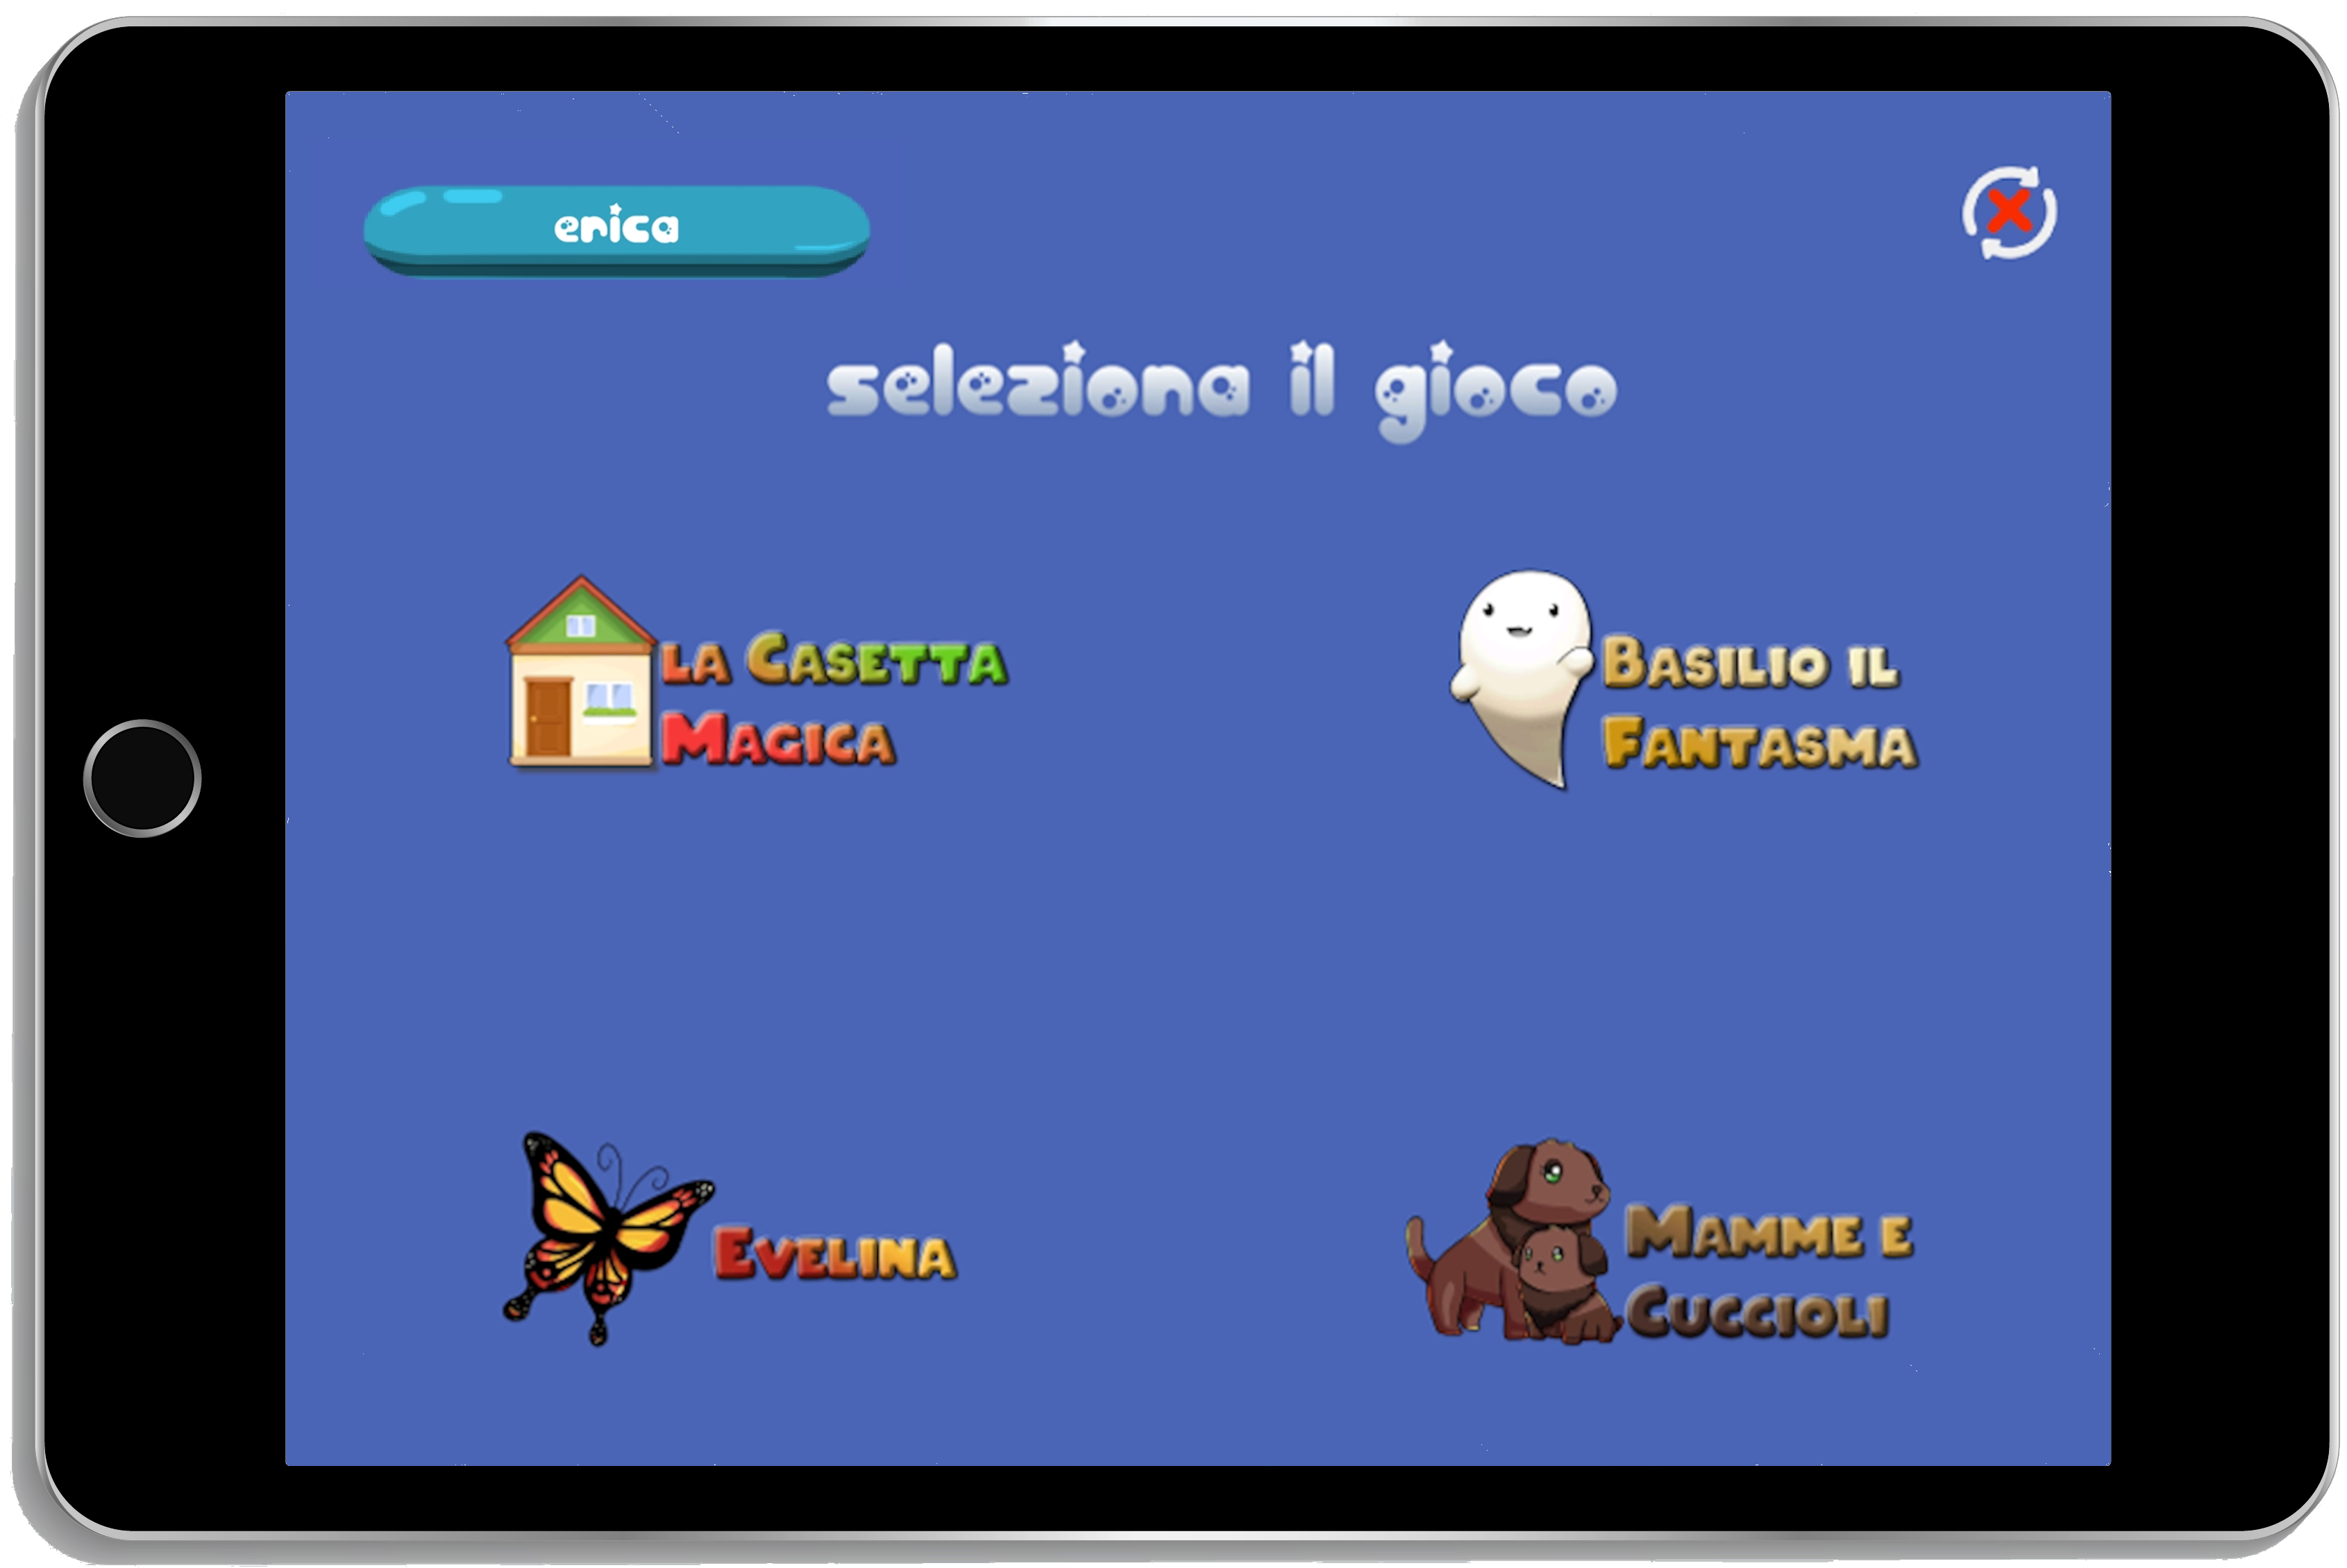 immagine di un tablet con mostrata l'interfaccia principale dei quattro giochi contenuti nella app